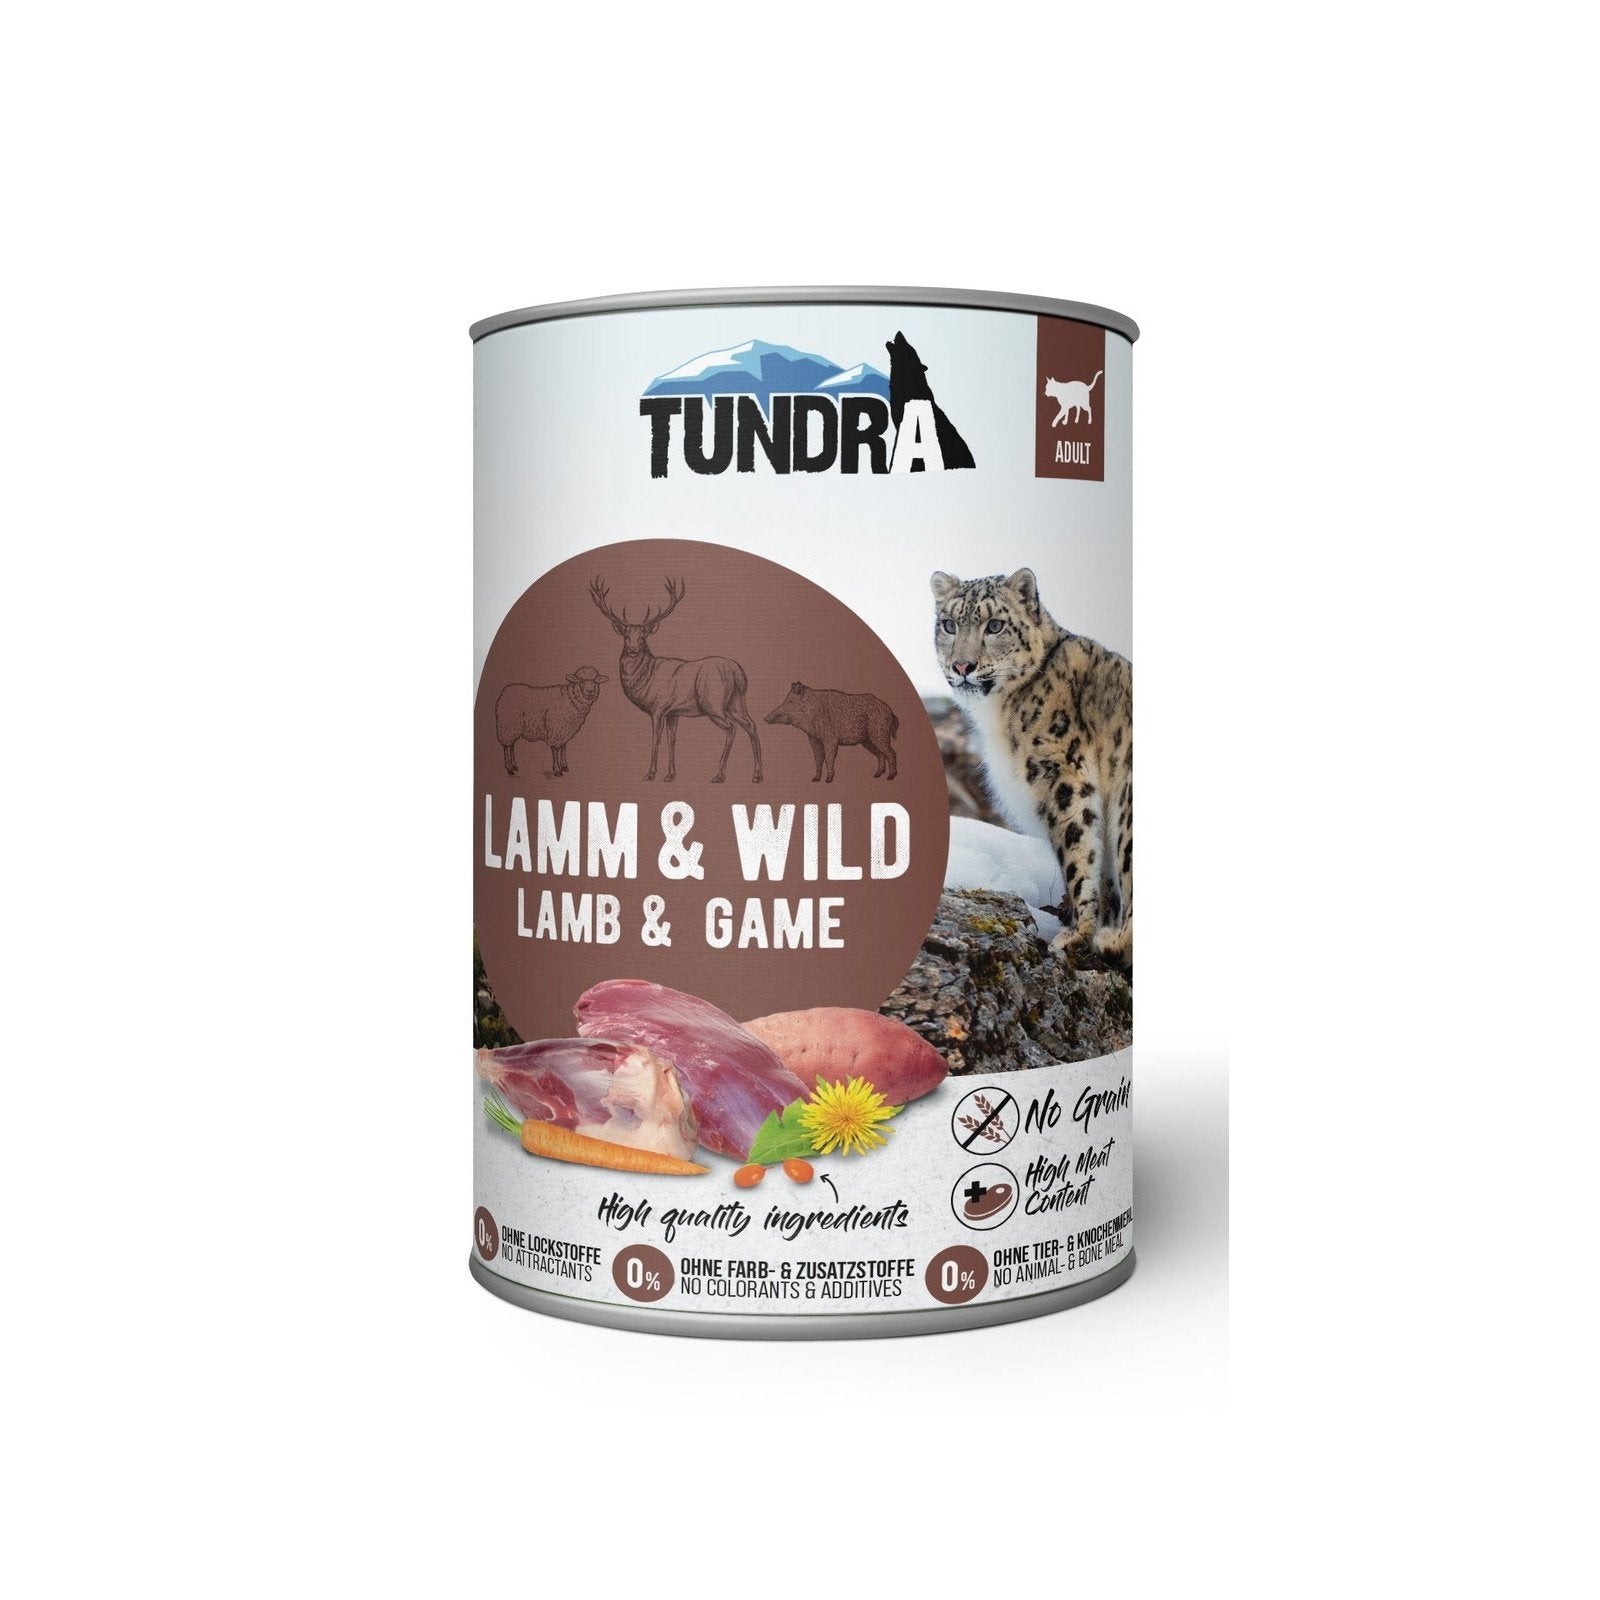 Artikel mit dem Namen Tundra Katze Lamm & Wild Dose im Shop von zoo.de , dem Onlineshop für nachhaltiges Hundefutter und Katzenfutter.